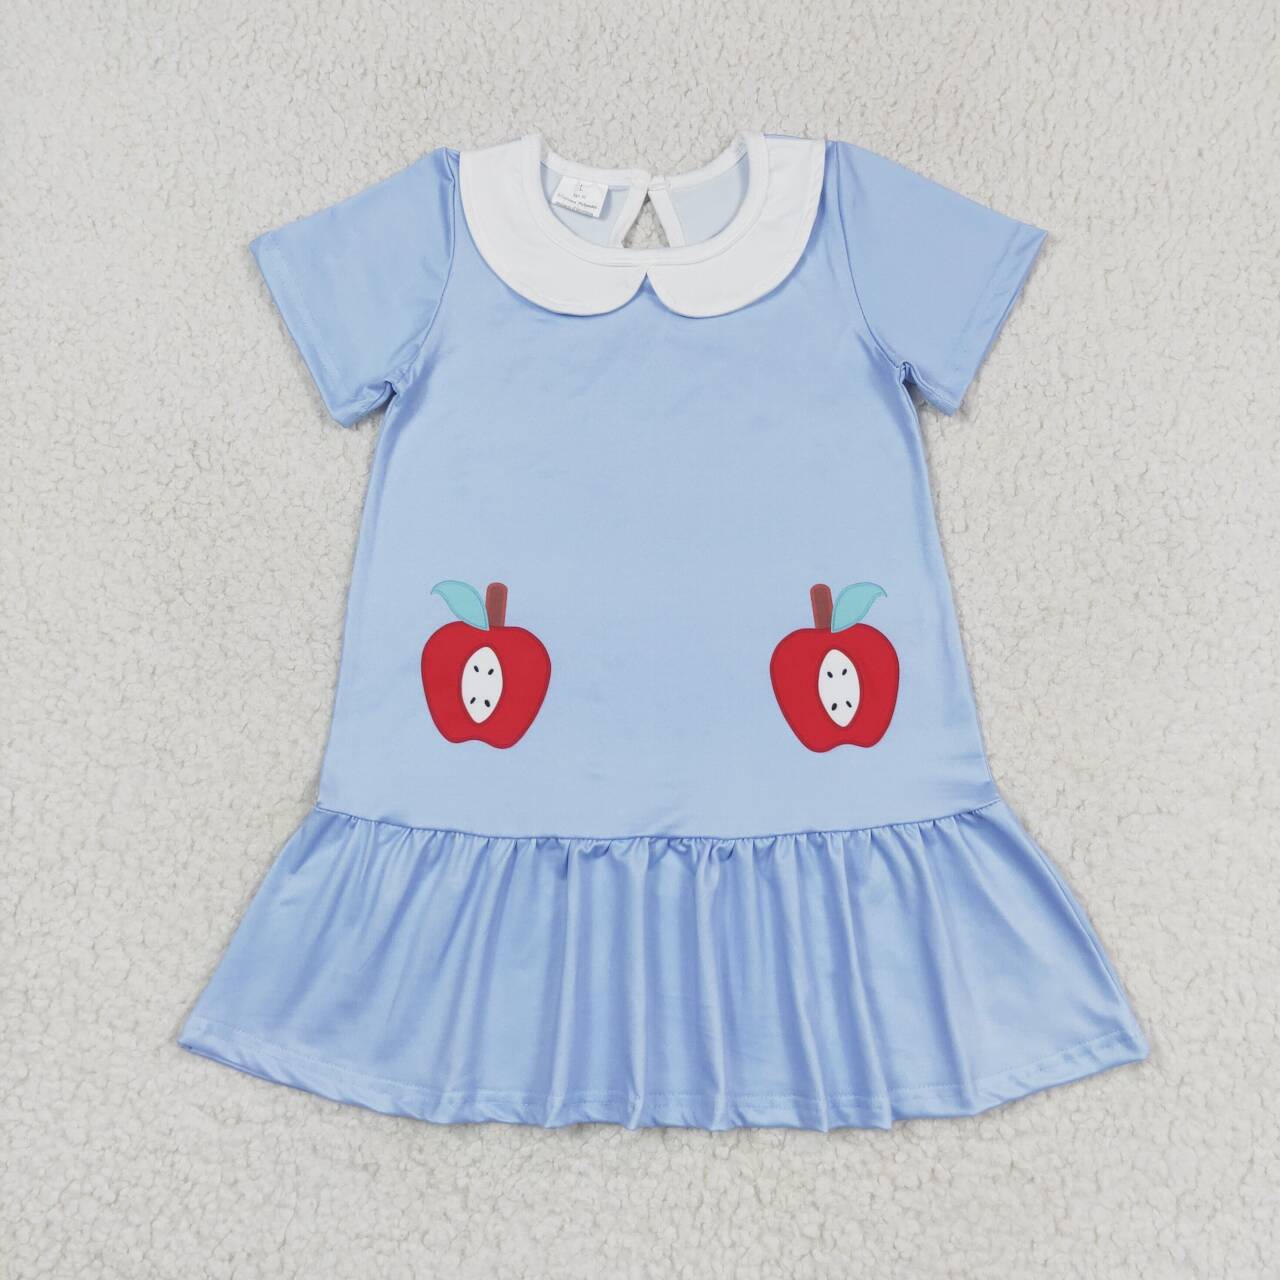 GSD0953 Baby girl summer clothes short  sleeveless top kids dress